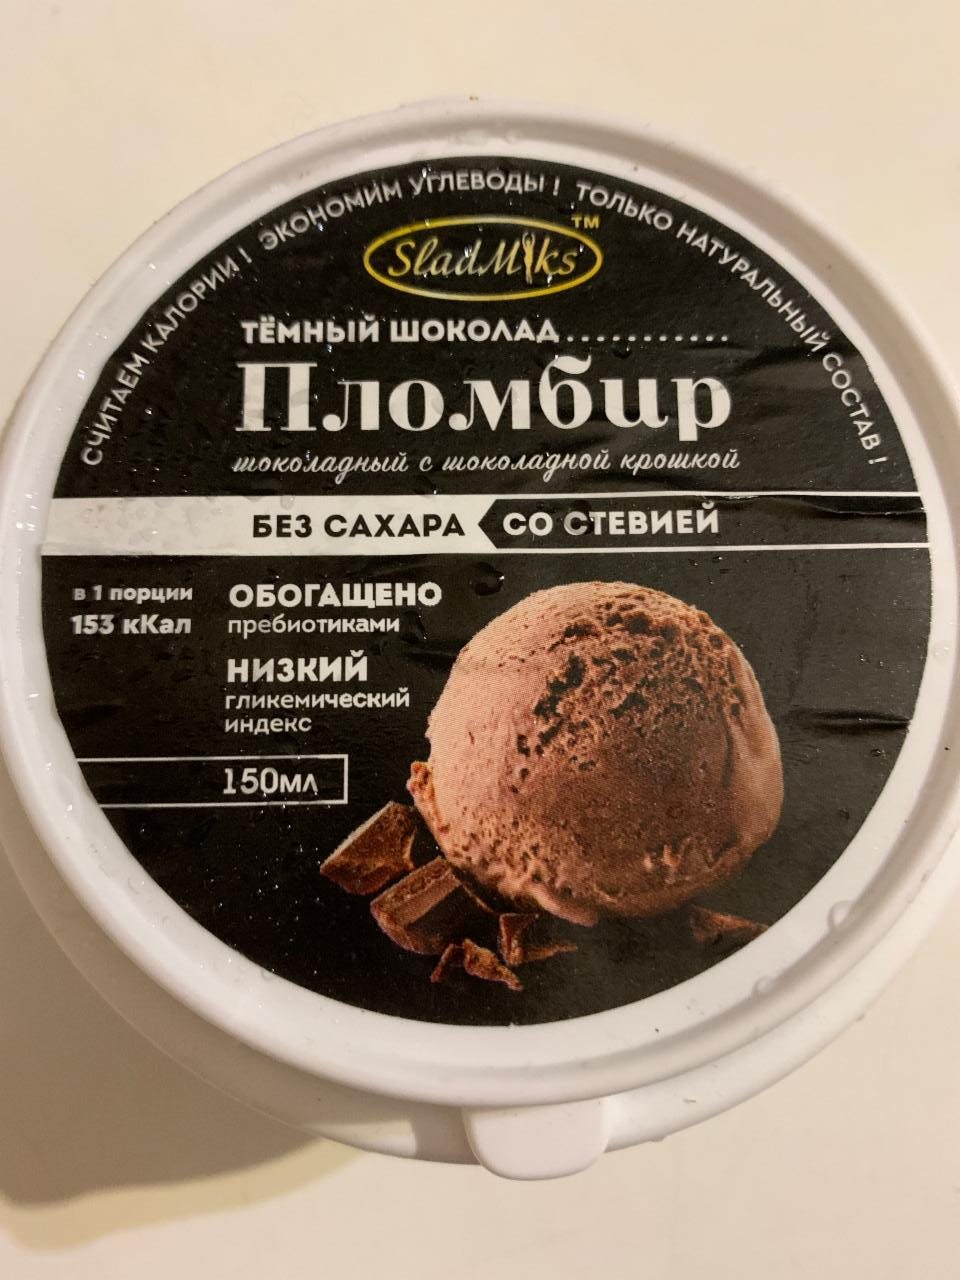 Фото - Мороженое пломбир шоколадный с шоколадной крошкой SladMiks